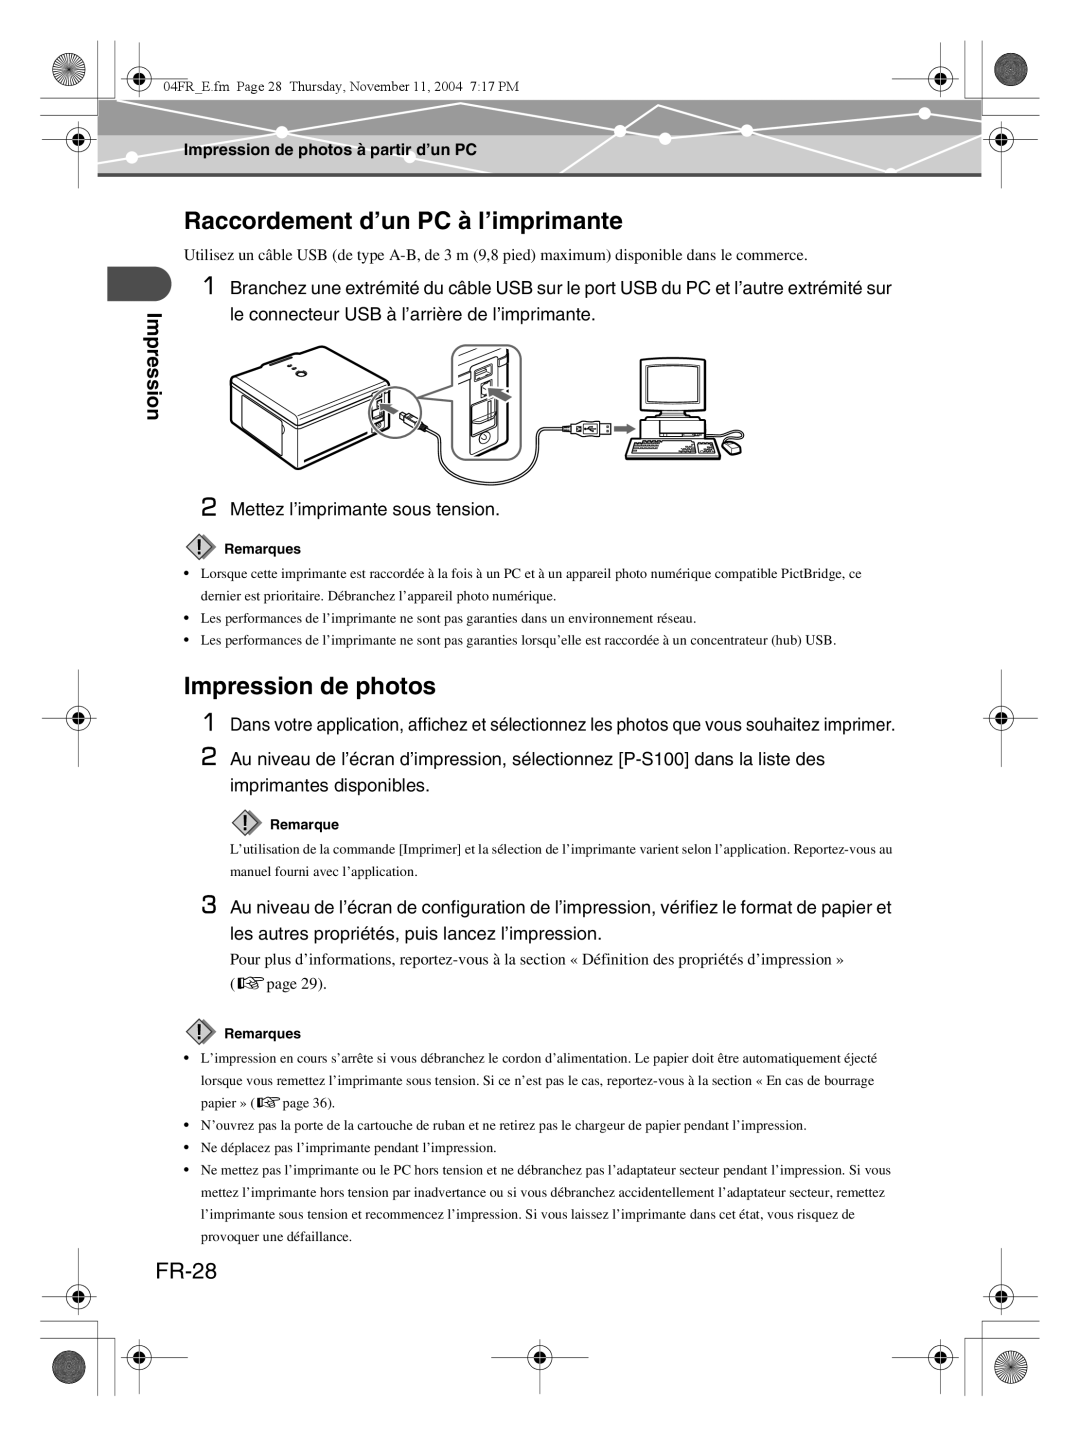 Olympus P-S100 user manual Raccordement d’un PC à l’imprimante, Impression de photos, FR-28 